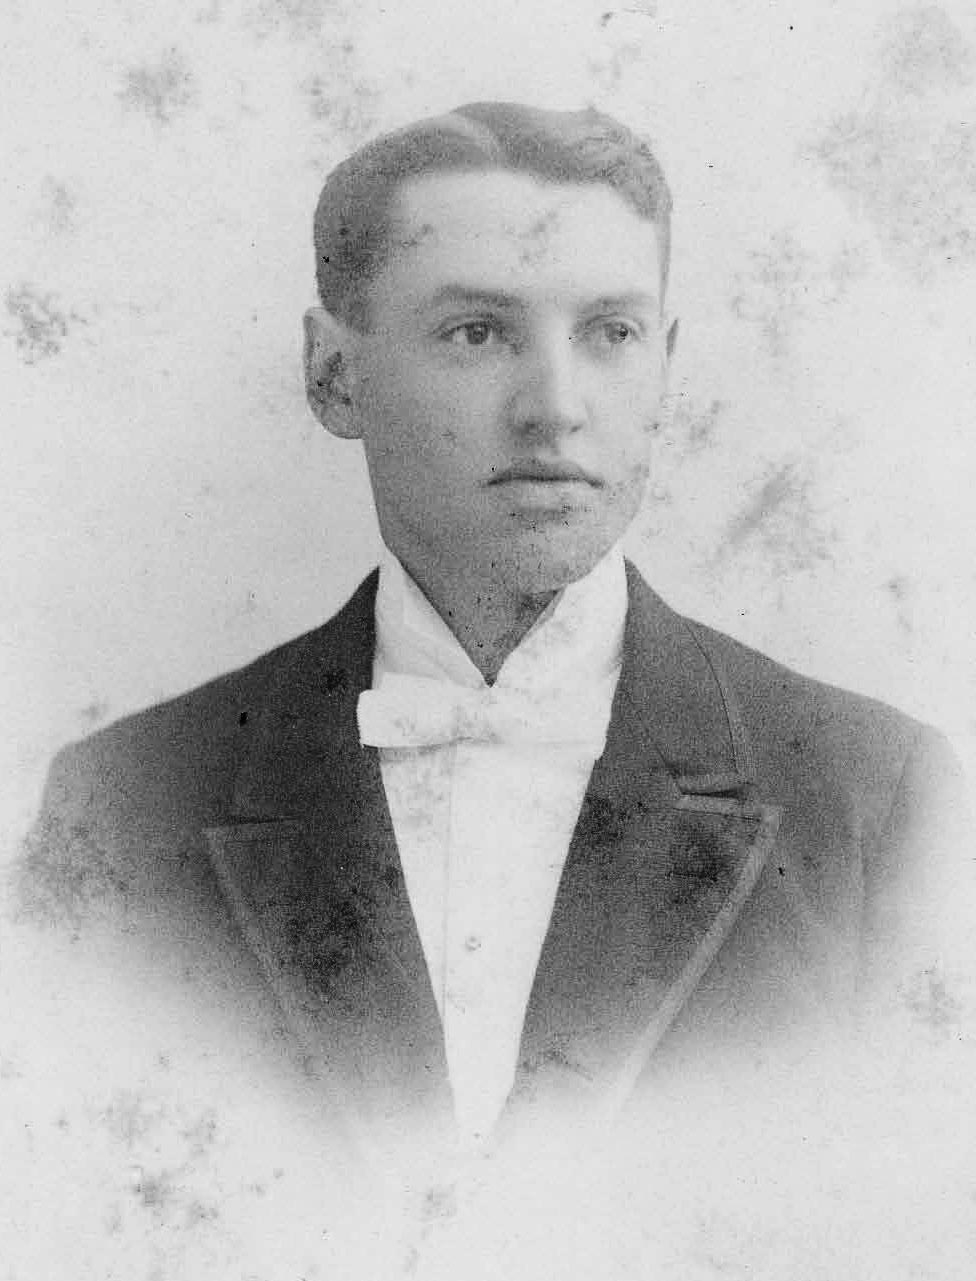 J. Frank Craig; Lawrence, Kansas